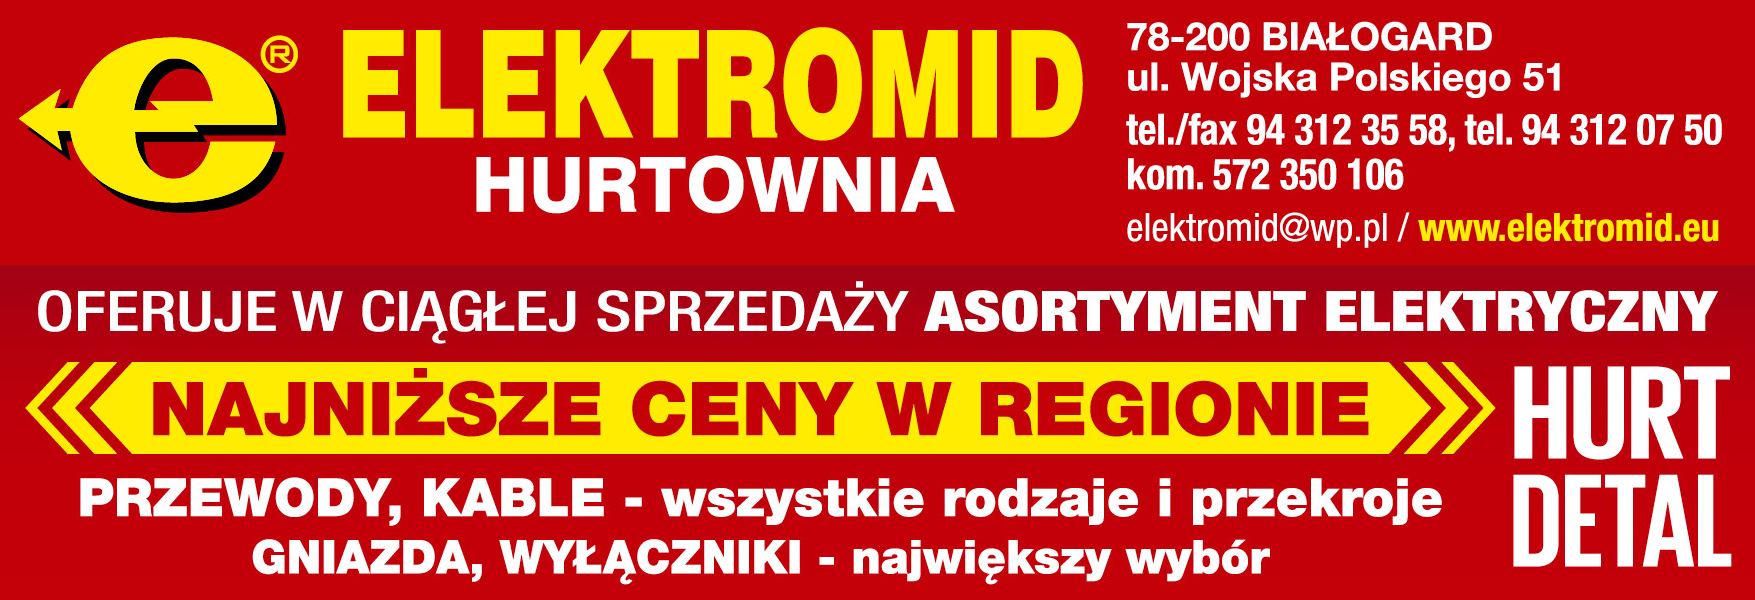 ELEKTROMID HURTOWNIA Białogard Przewody / Kable / Gniazda / Wyłączniki